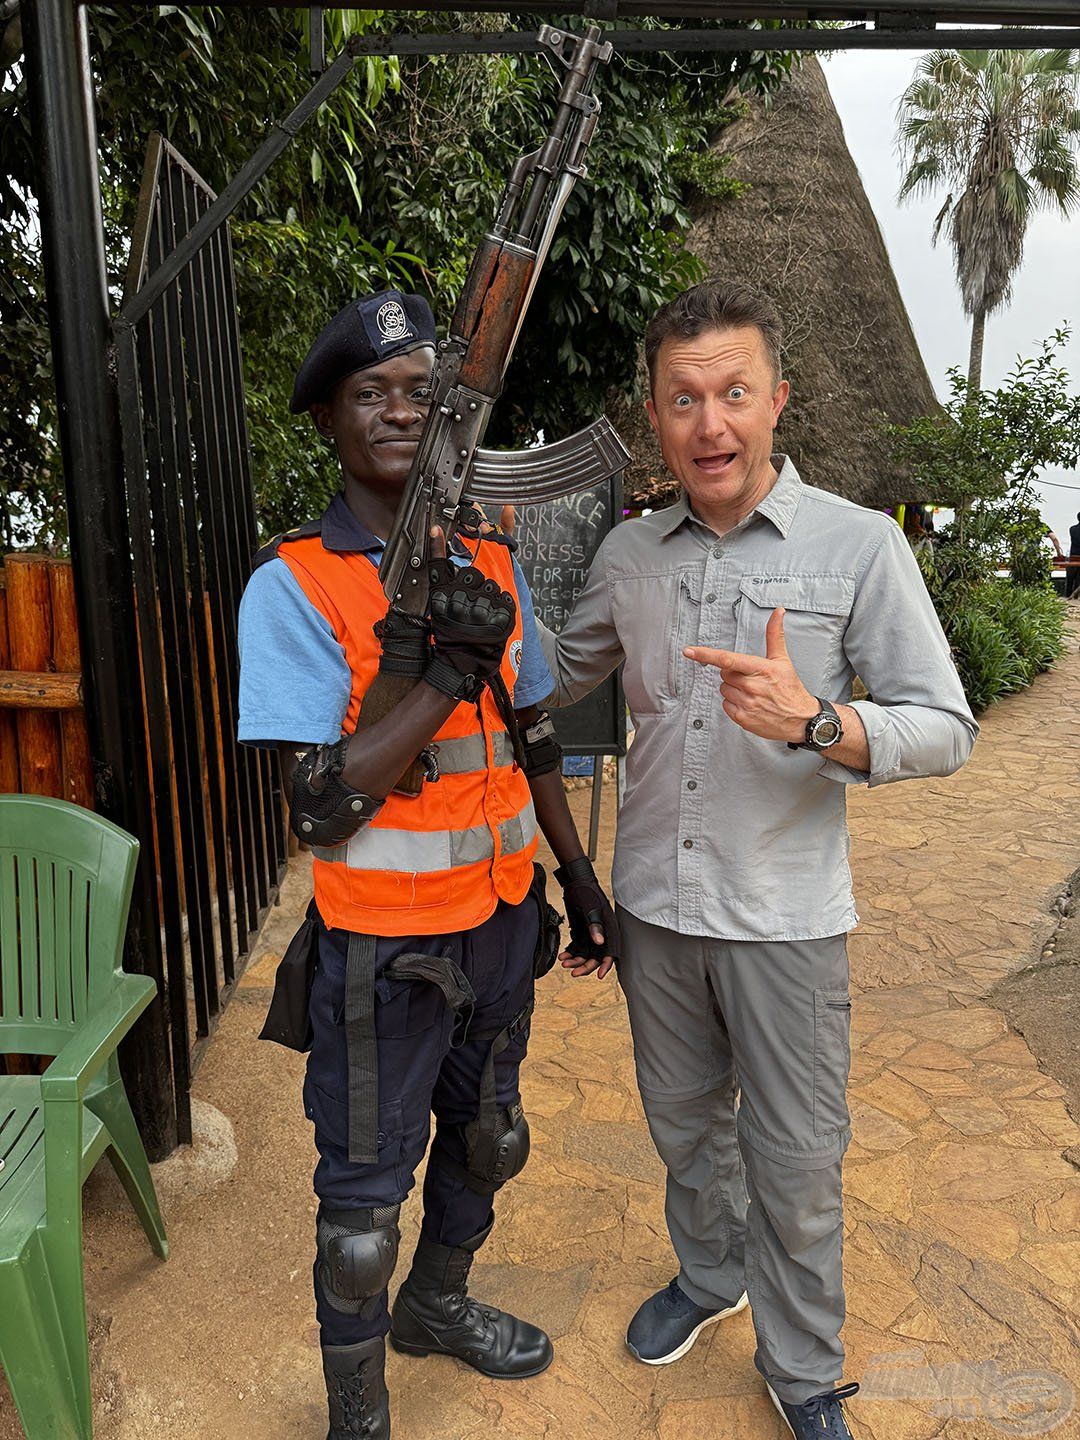 Afrikában komolyan veszik a létesítmények és személyek védelmét! Ez nem játékfegyver!!!